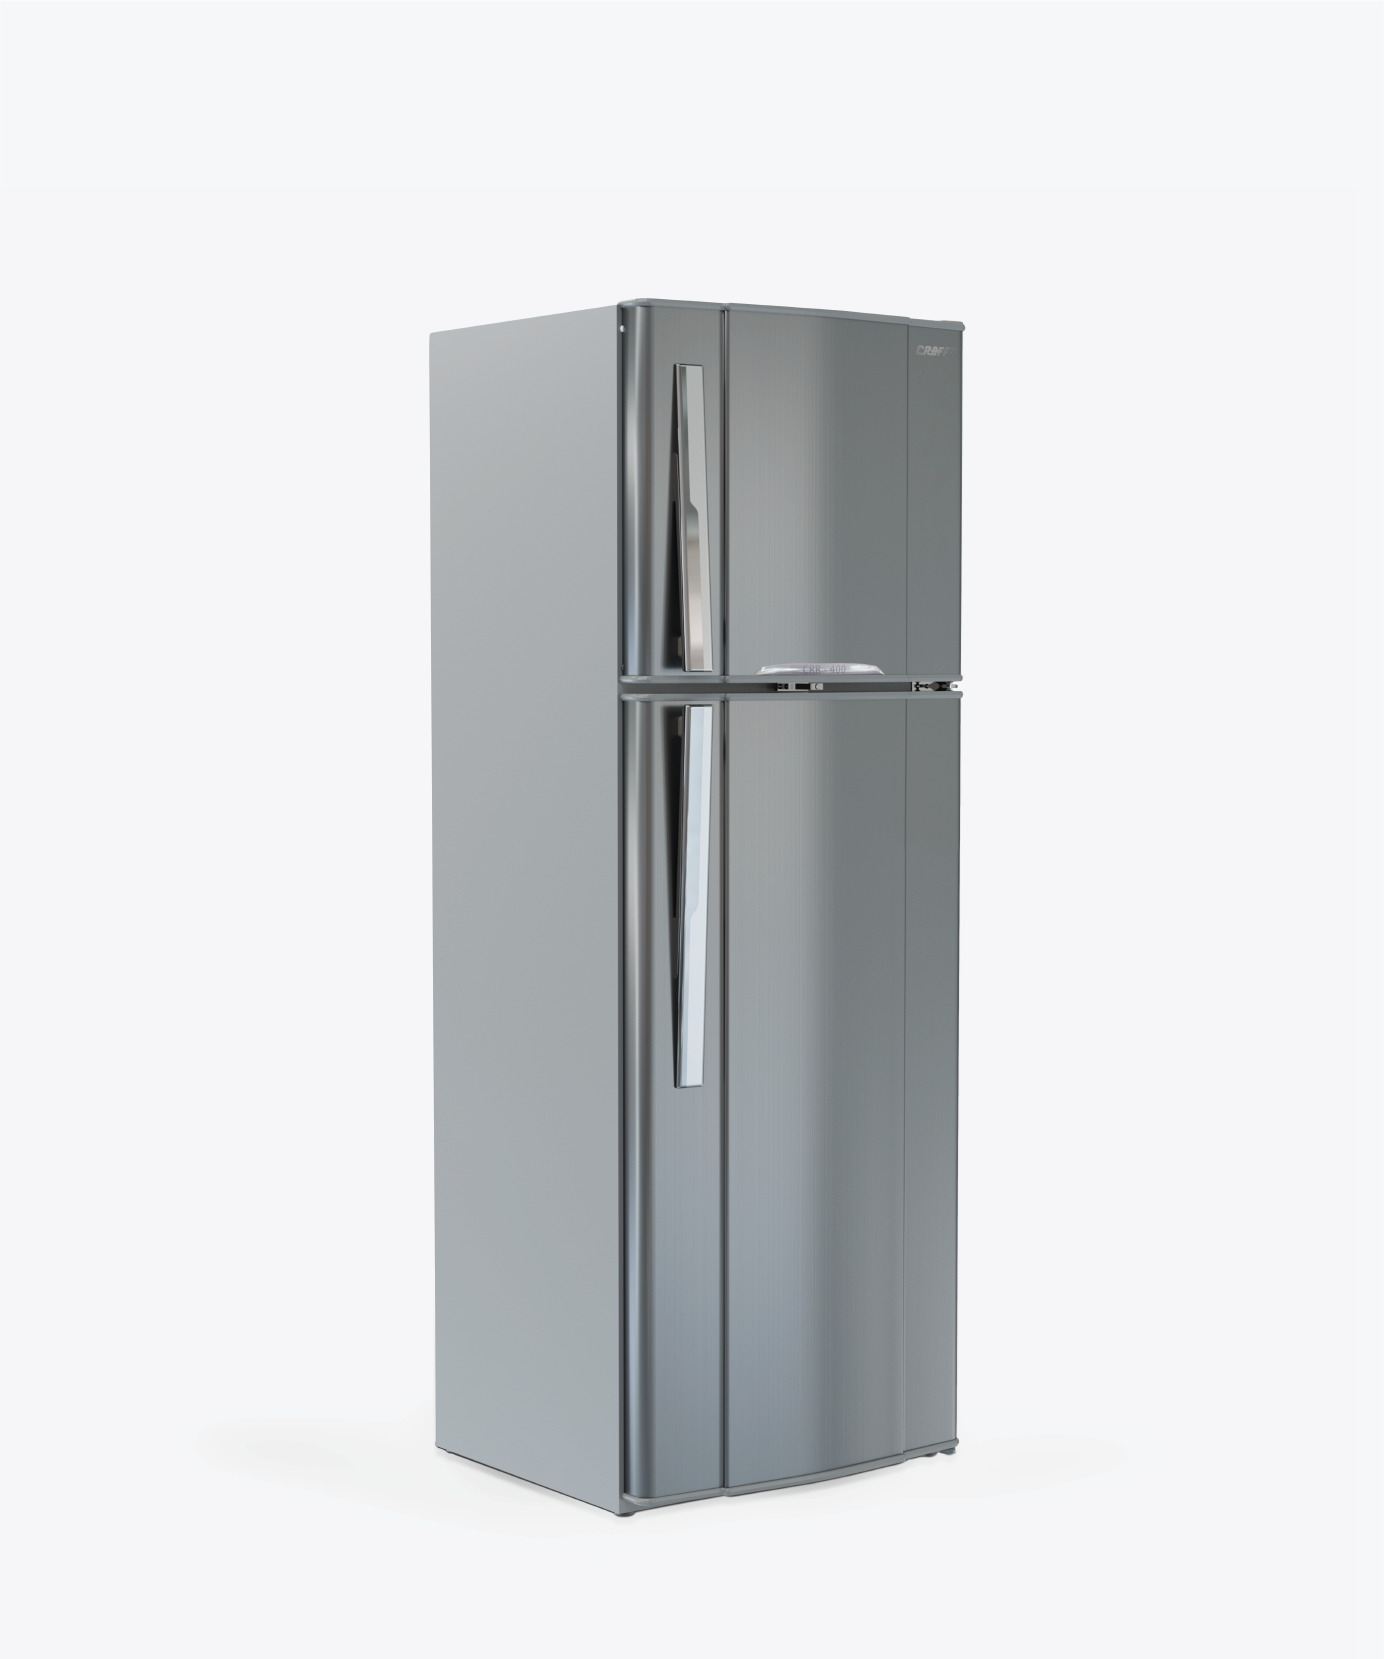 18 Feet Silver Refrigerator||Refrigerators 